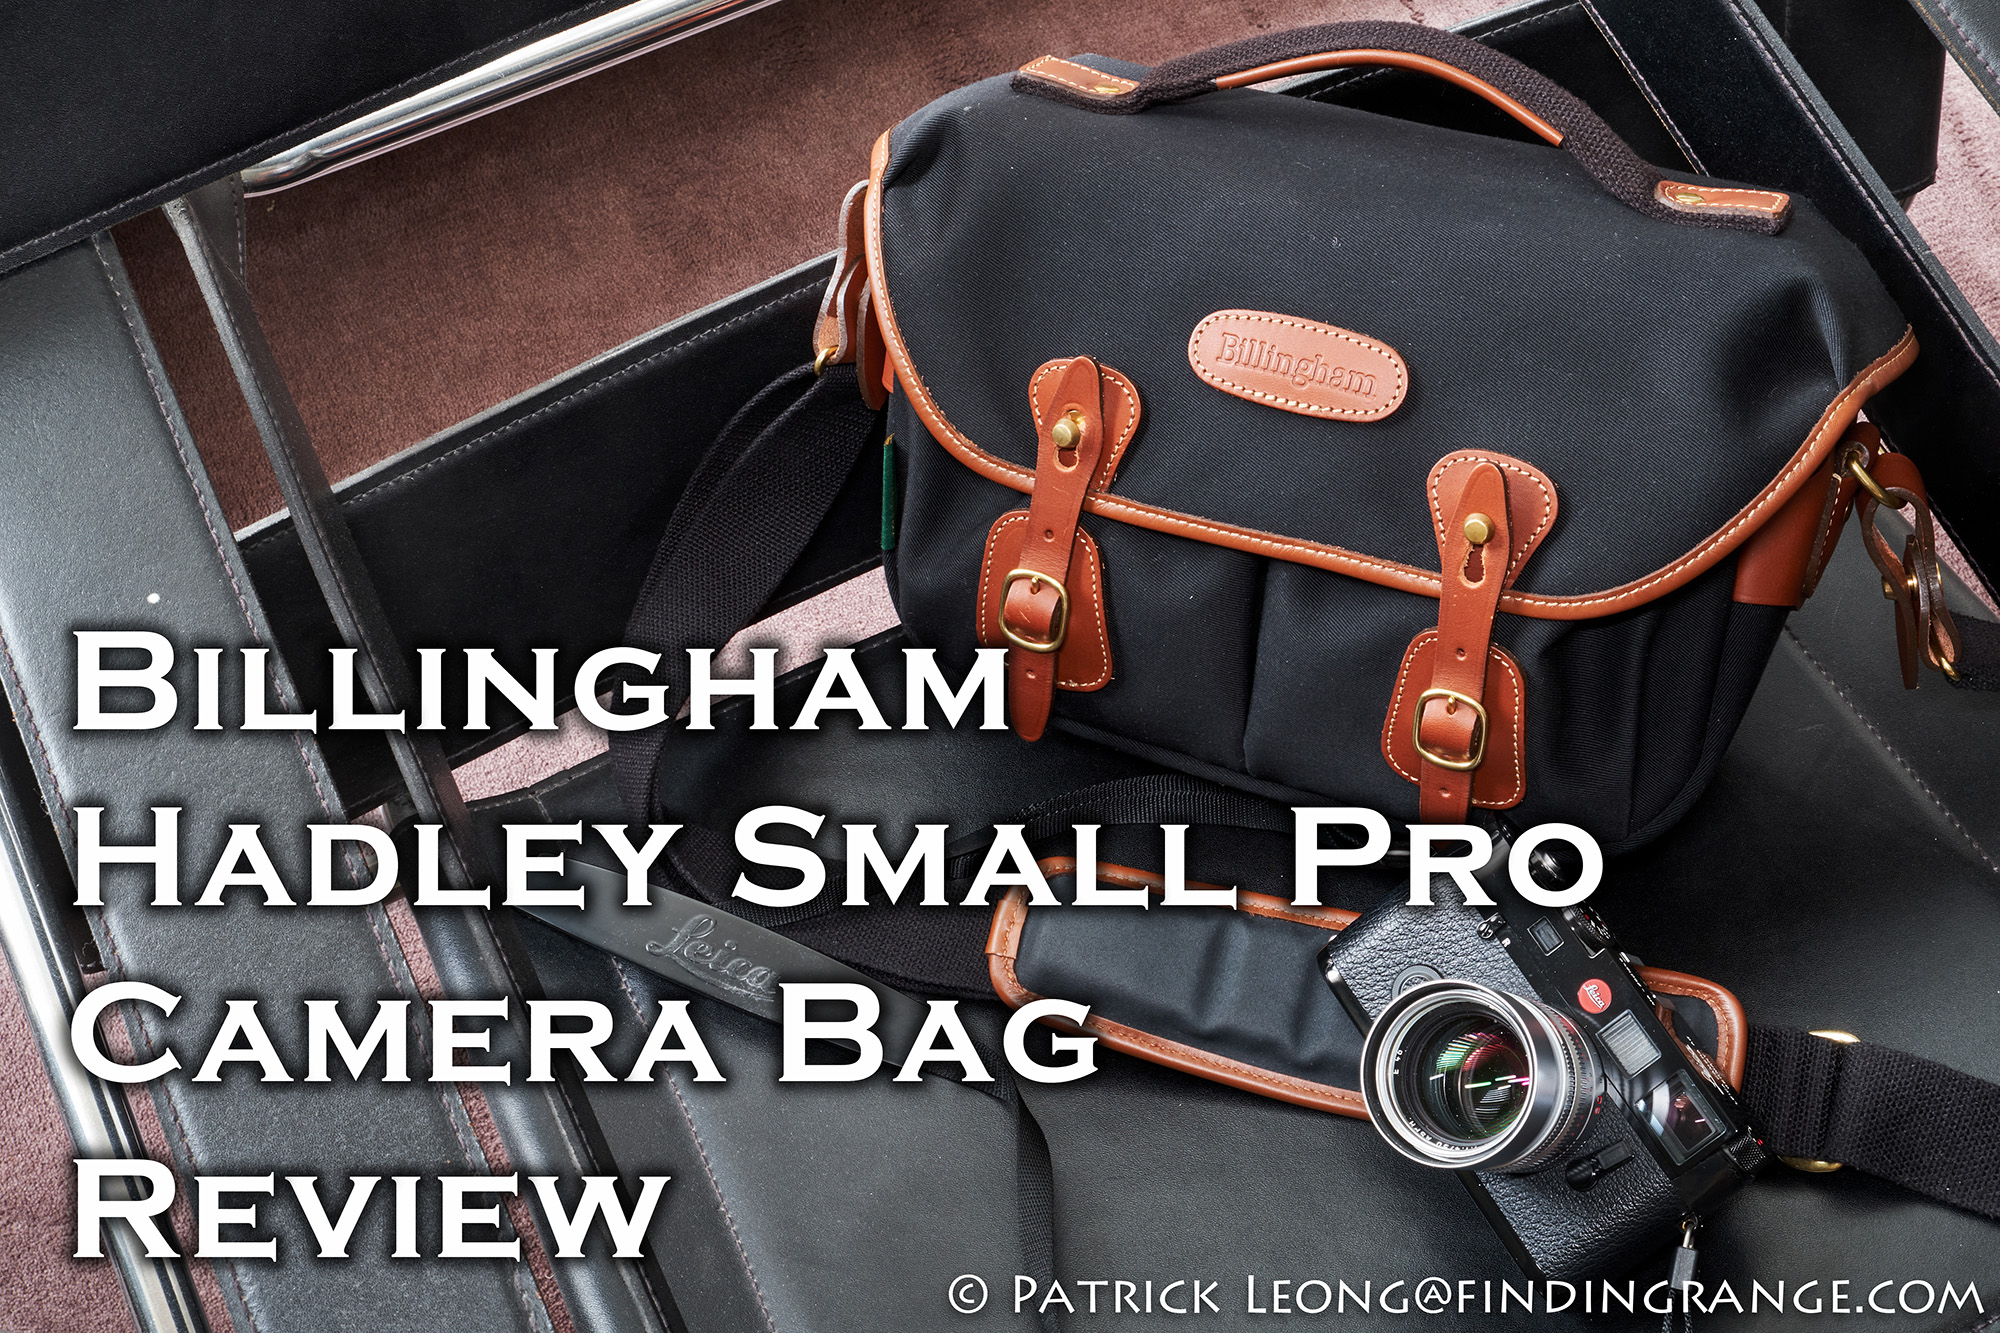 Hadley Small Pro Camera Bagいかがでしょうか